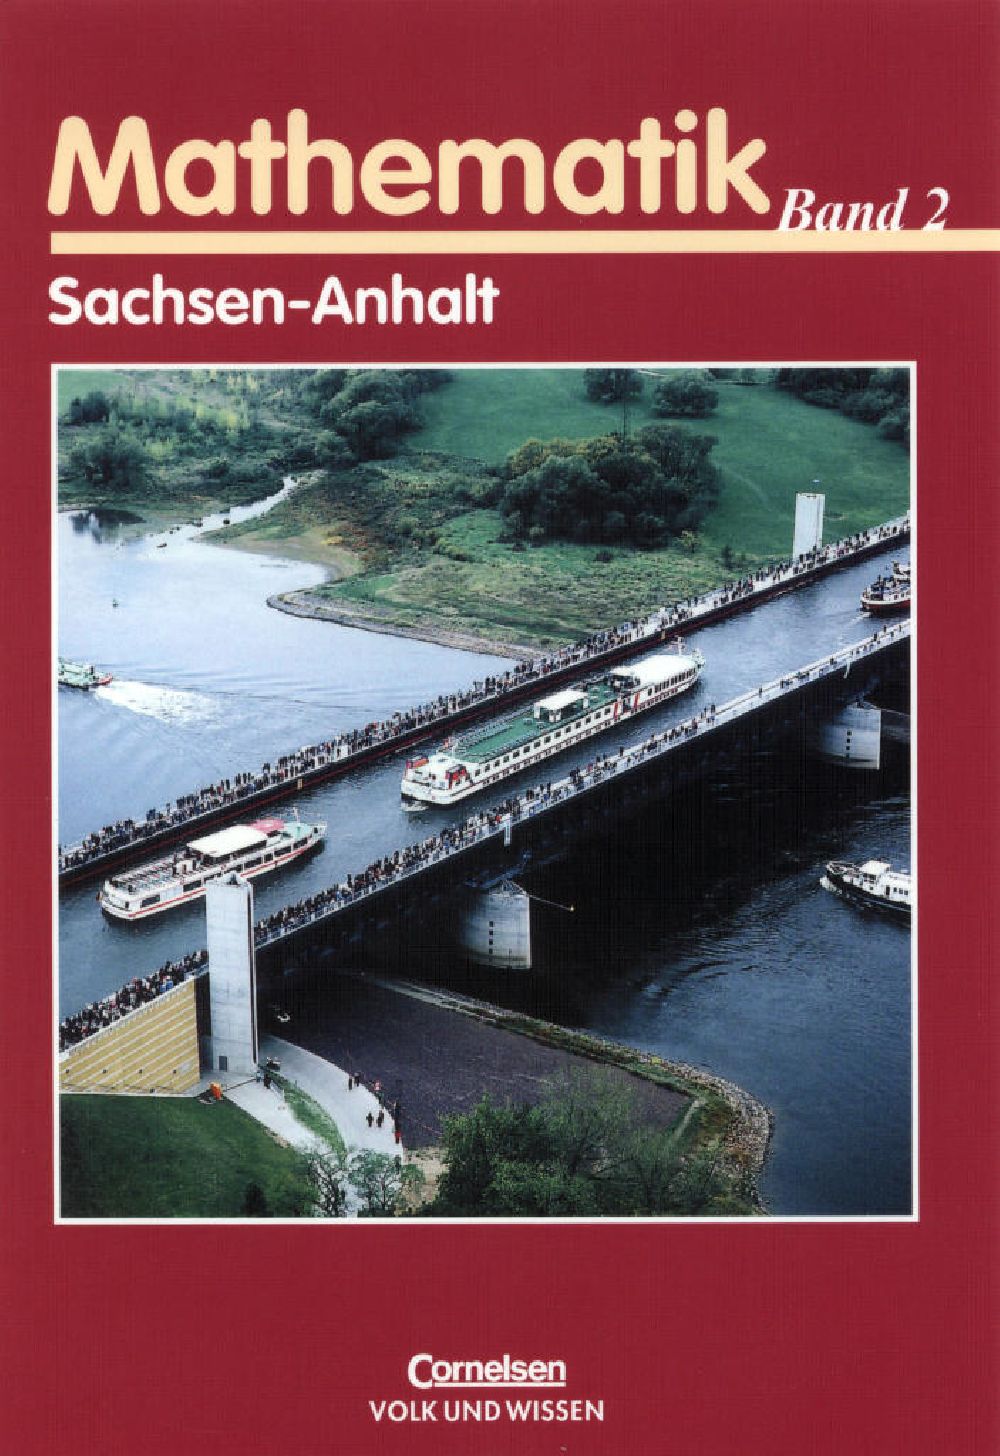 Luftbild Berlin - im Buch Mathematik Band 2 Sachsen-Anhalt Cornelsen Verlag Titelseite